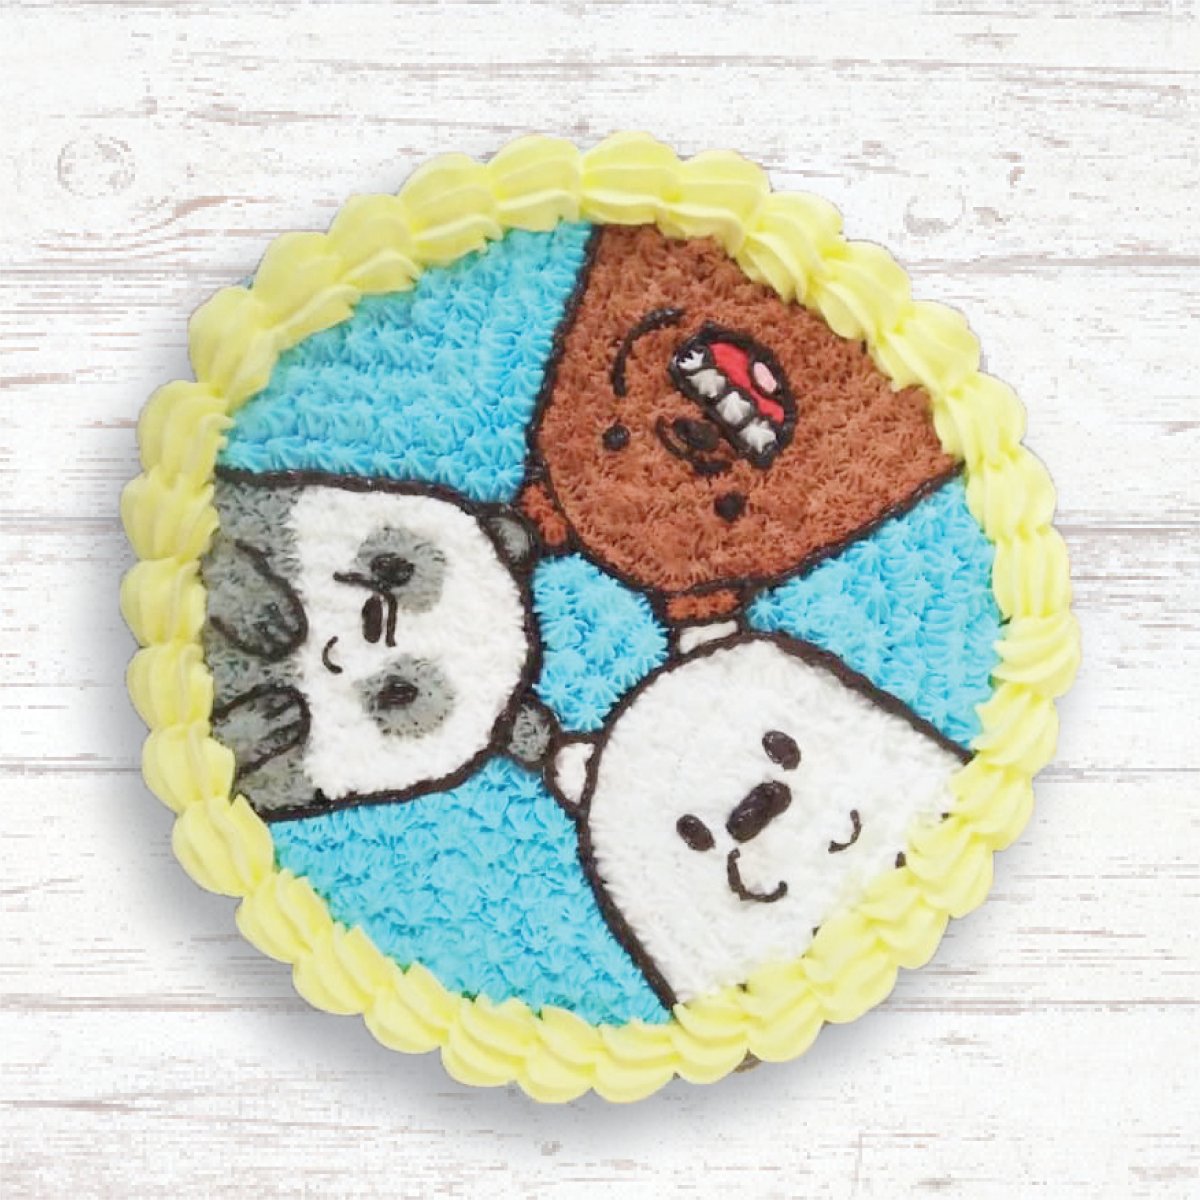 We Bare Bears Cake | Cartoon Network | Cake Art | Koalipops - YouTube